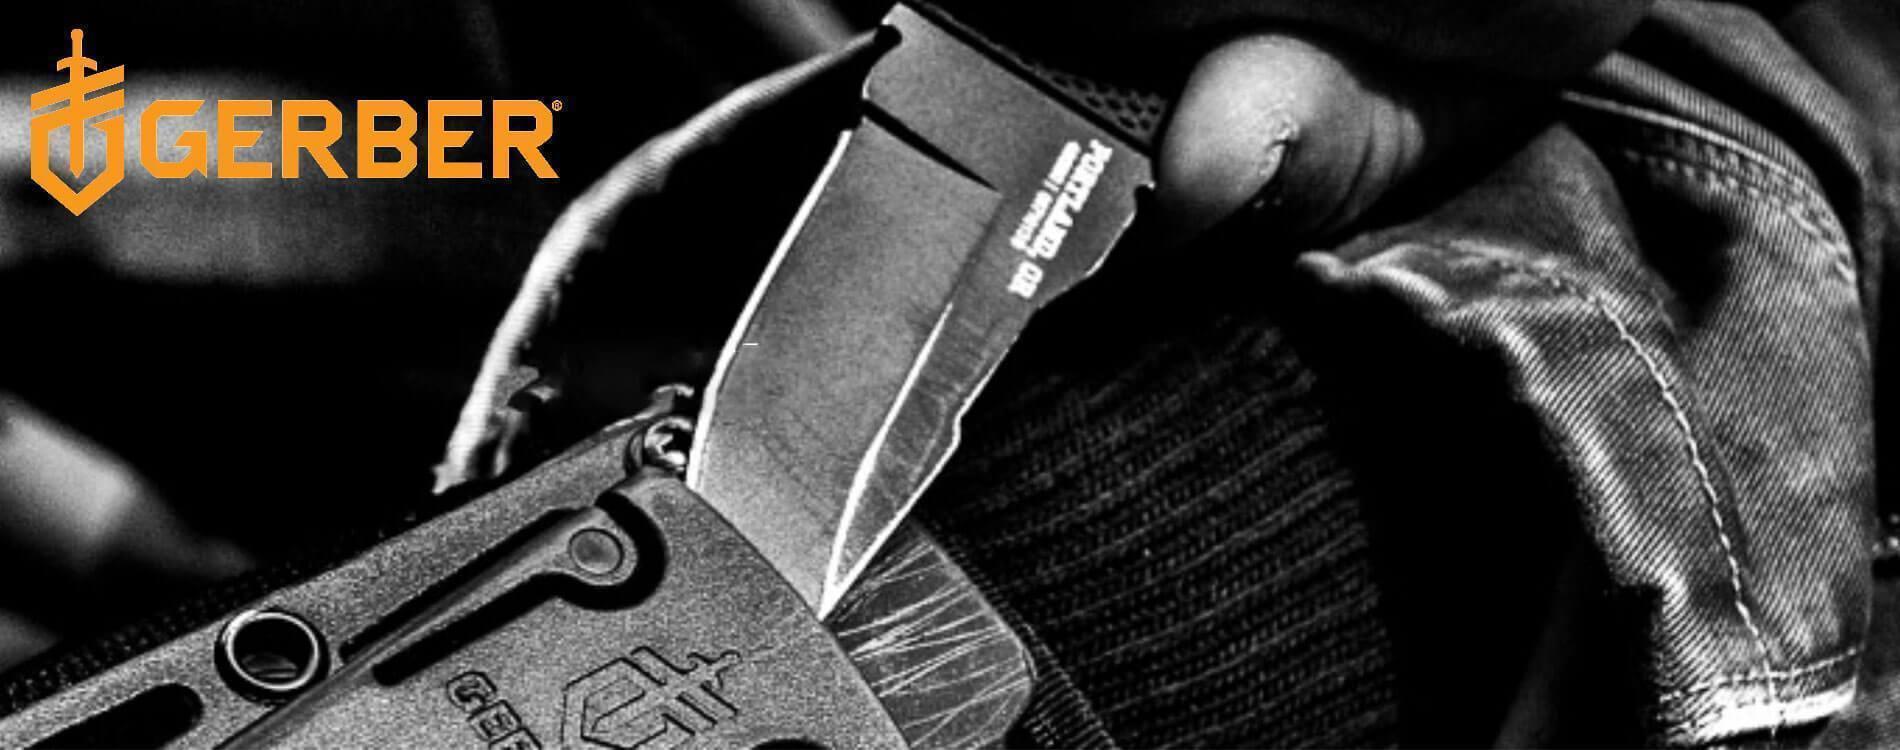 Gerber - Multiverktyg, knivar och andra verktyg av yttersta kvalitet - TacNGear